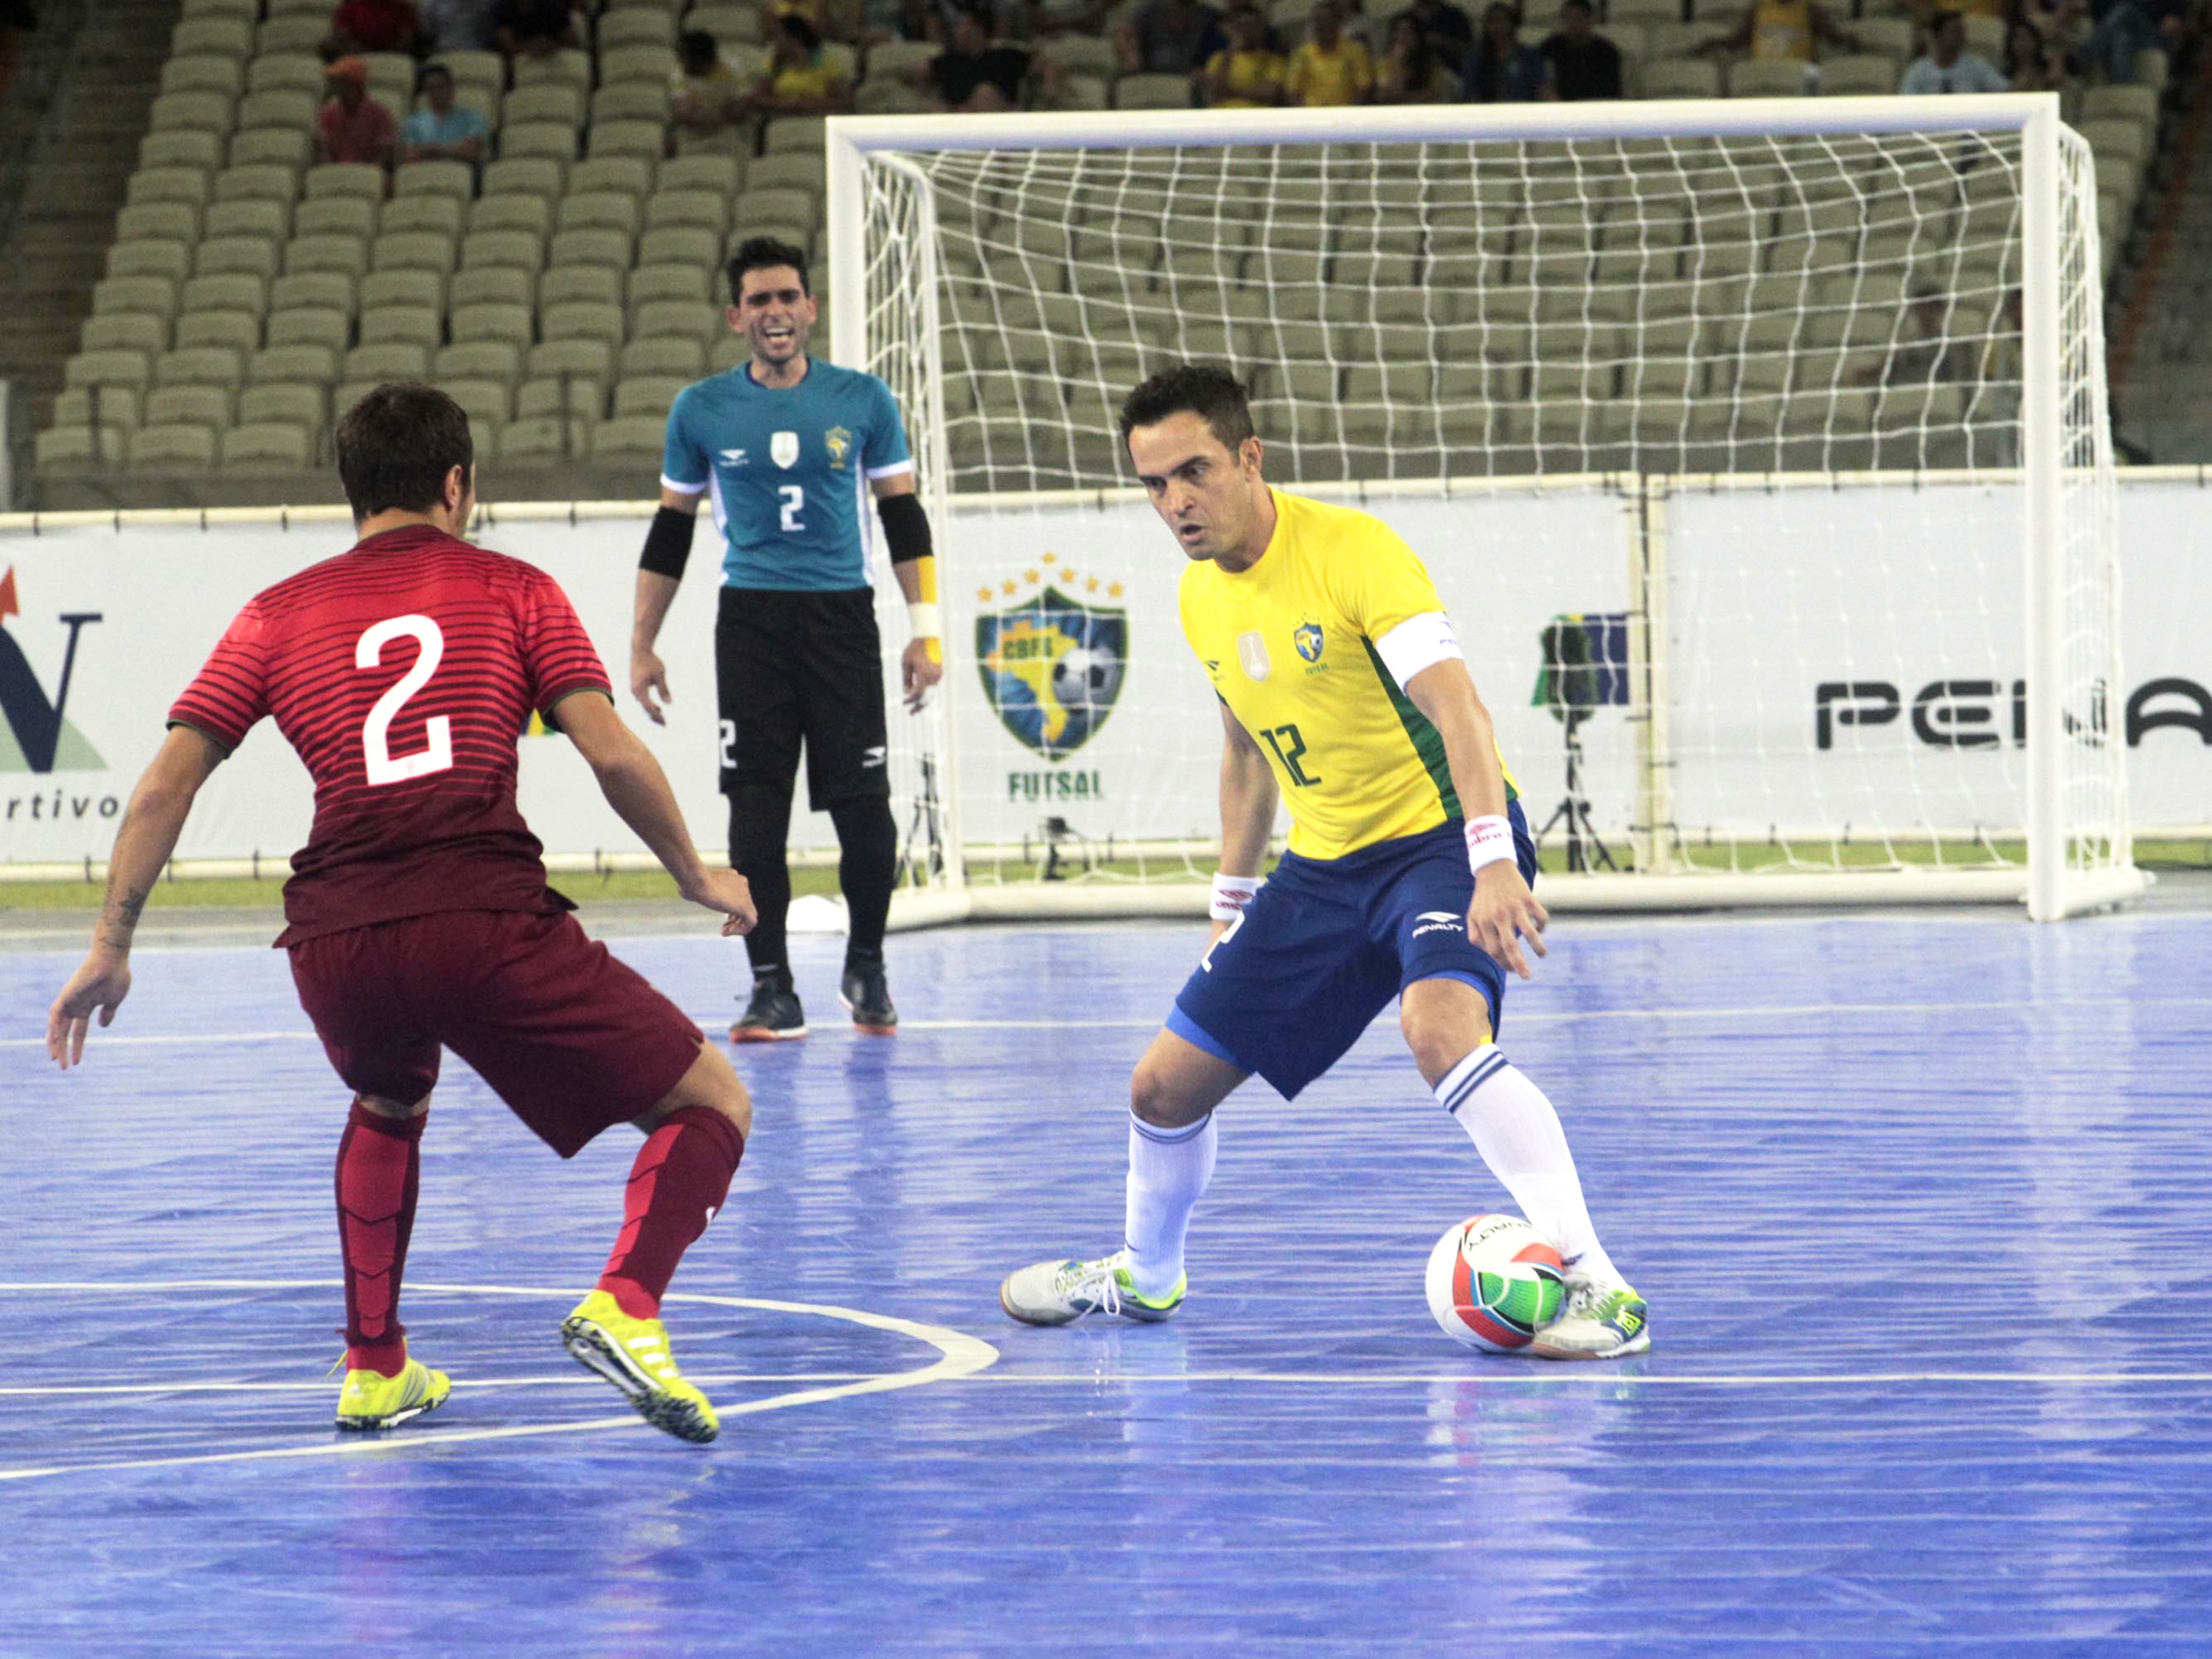 Longe do recorde, seleção de futsal derrota Portugal em Fortaleza